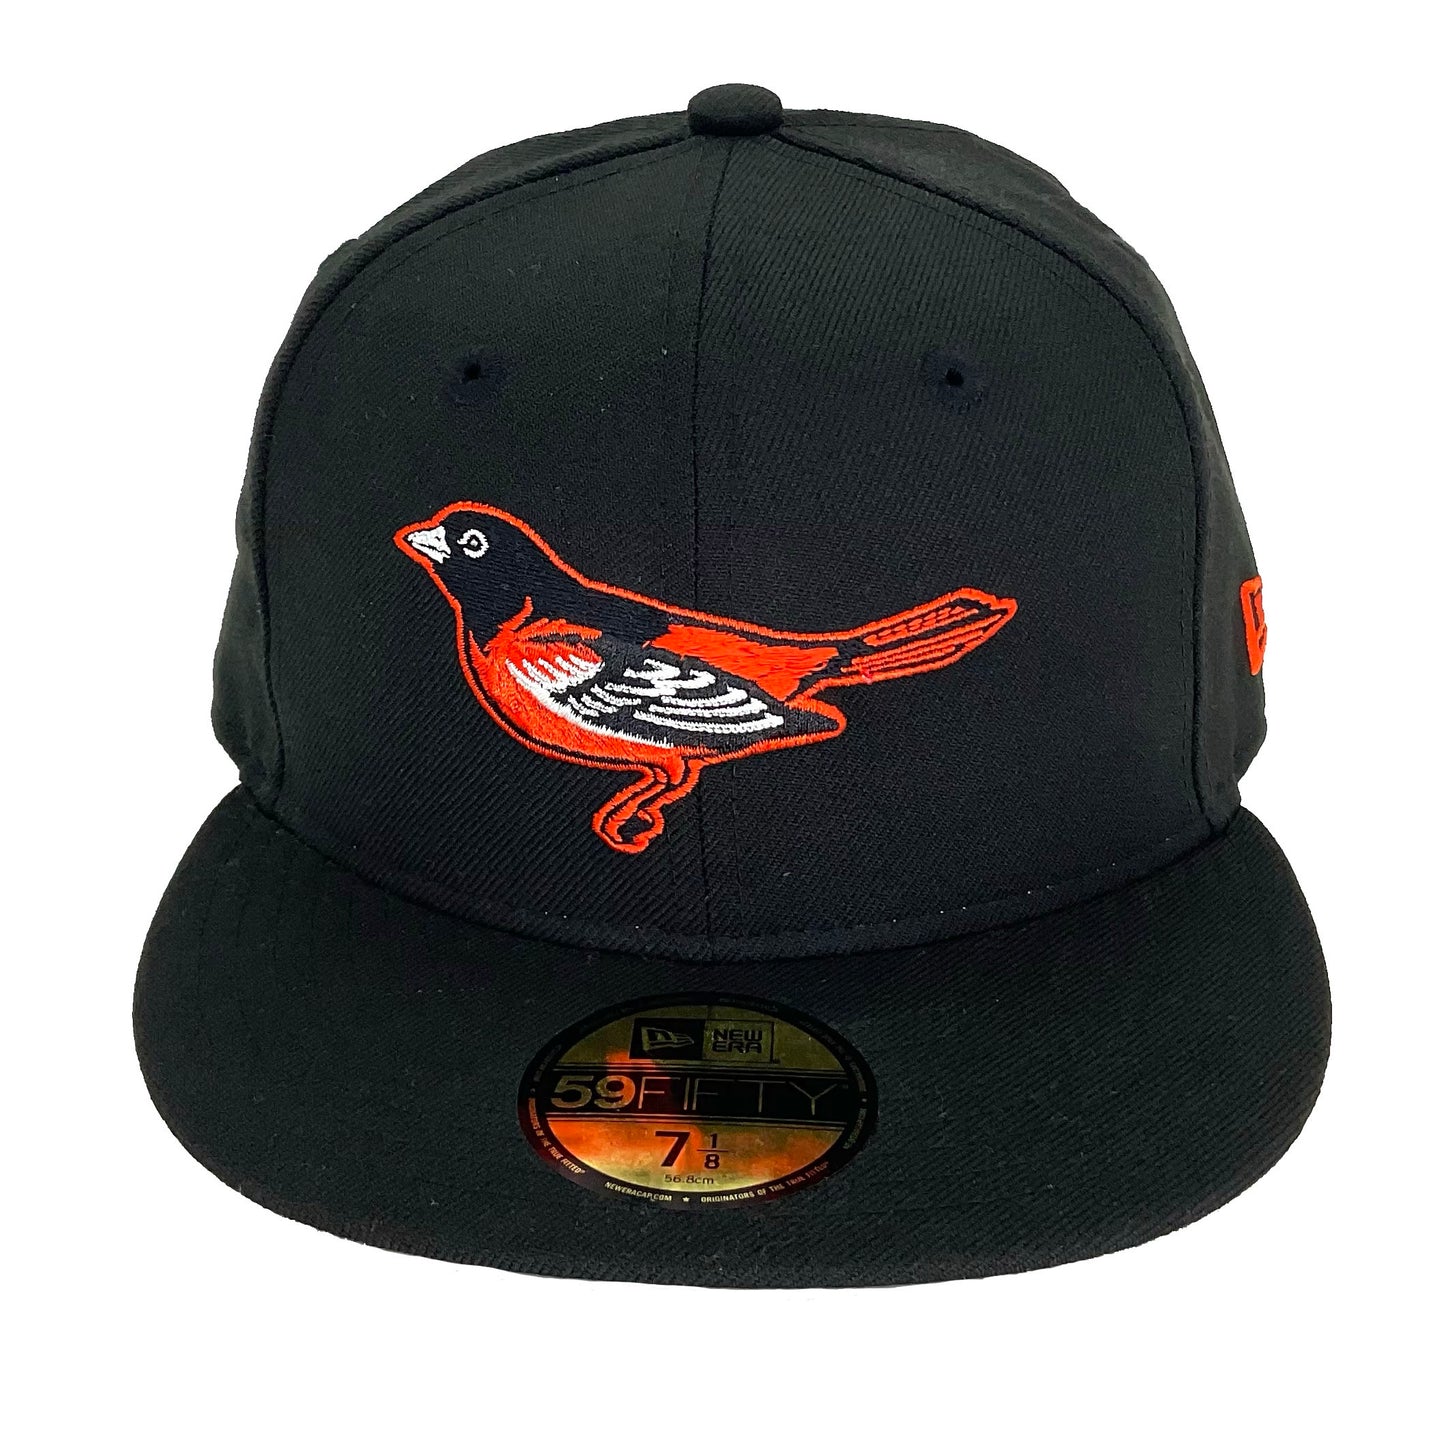 Baltimore Orioles Jf Custom New Era Cap Black Orange